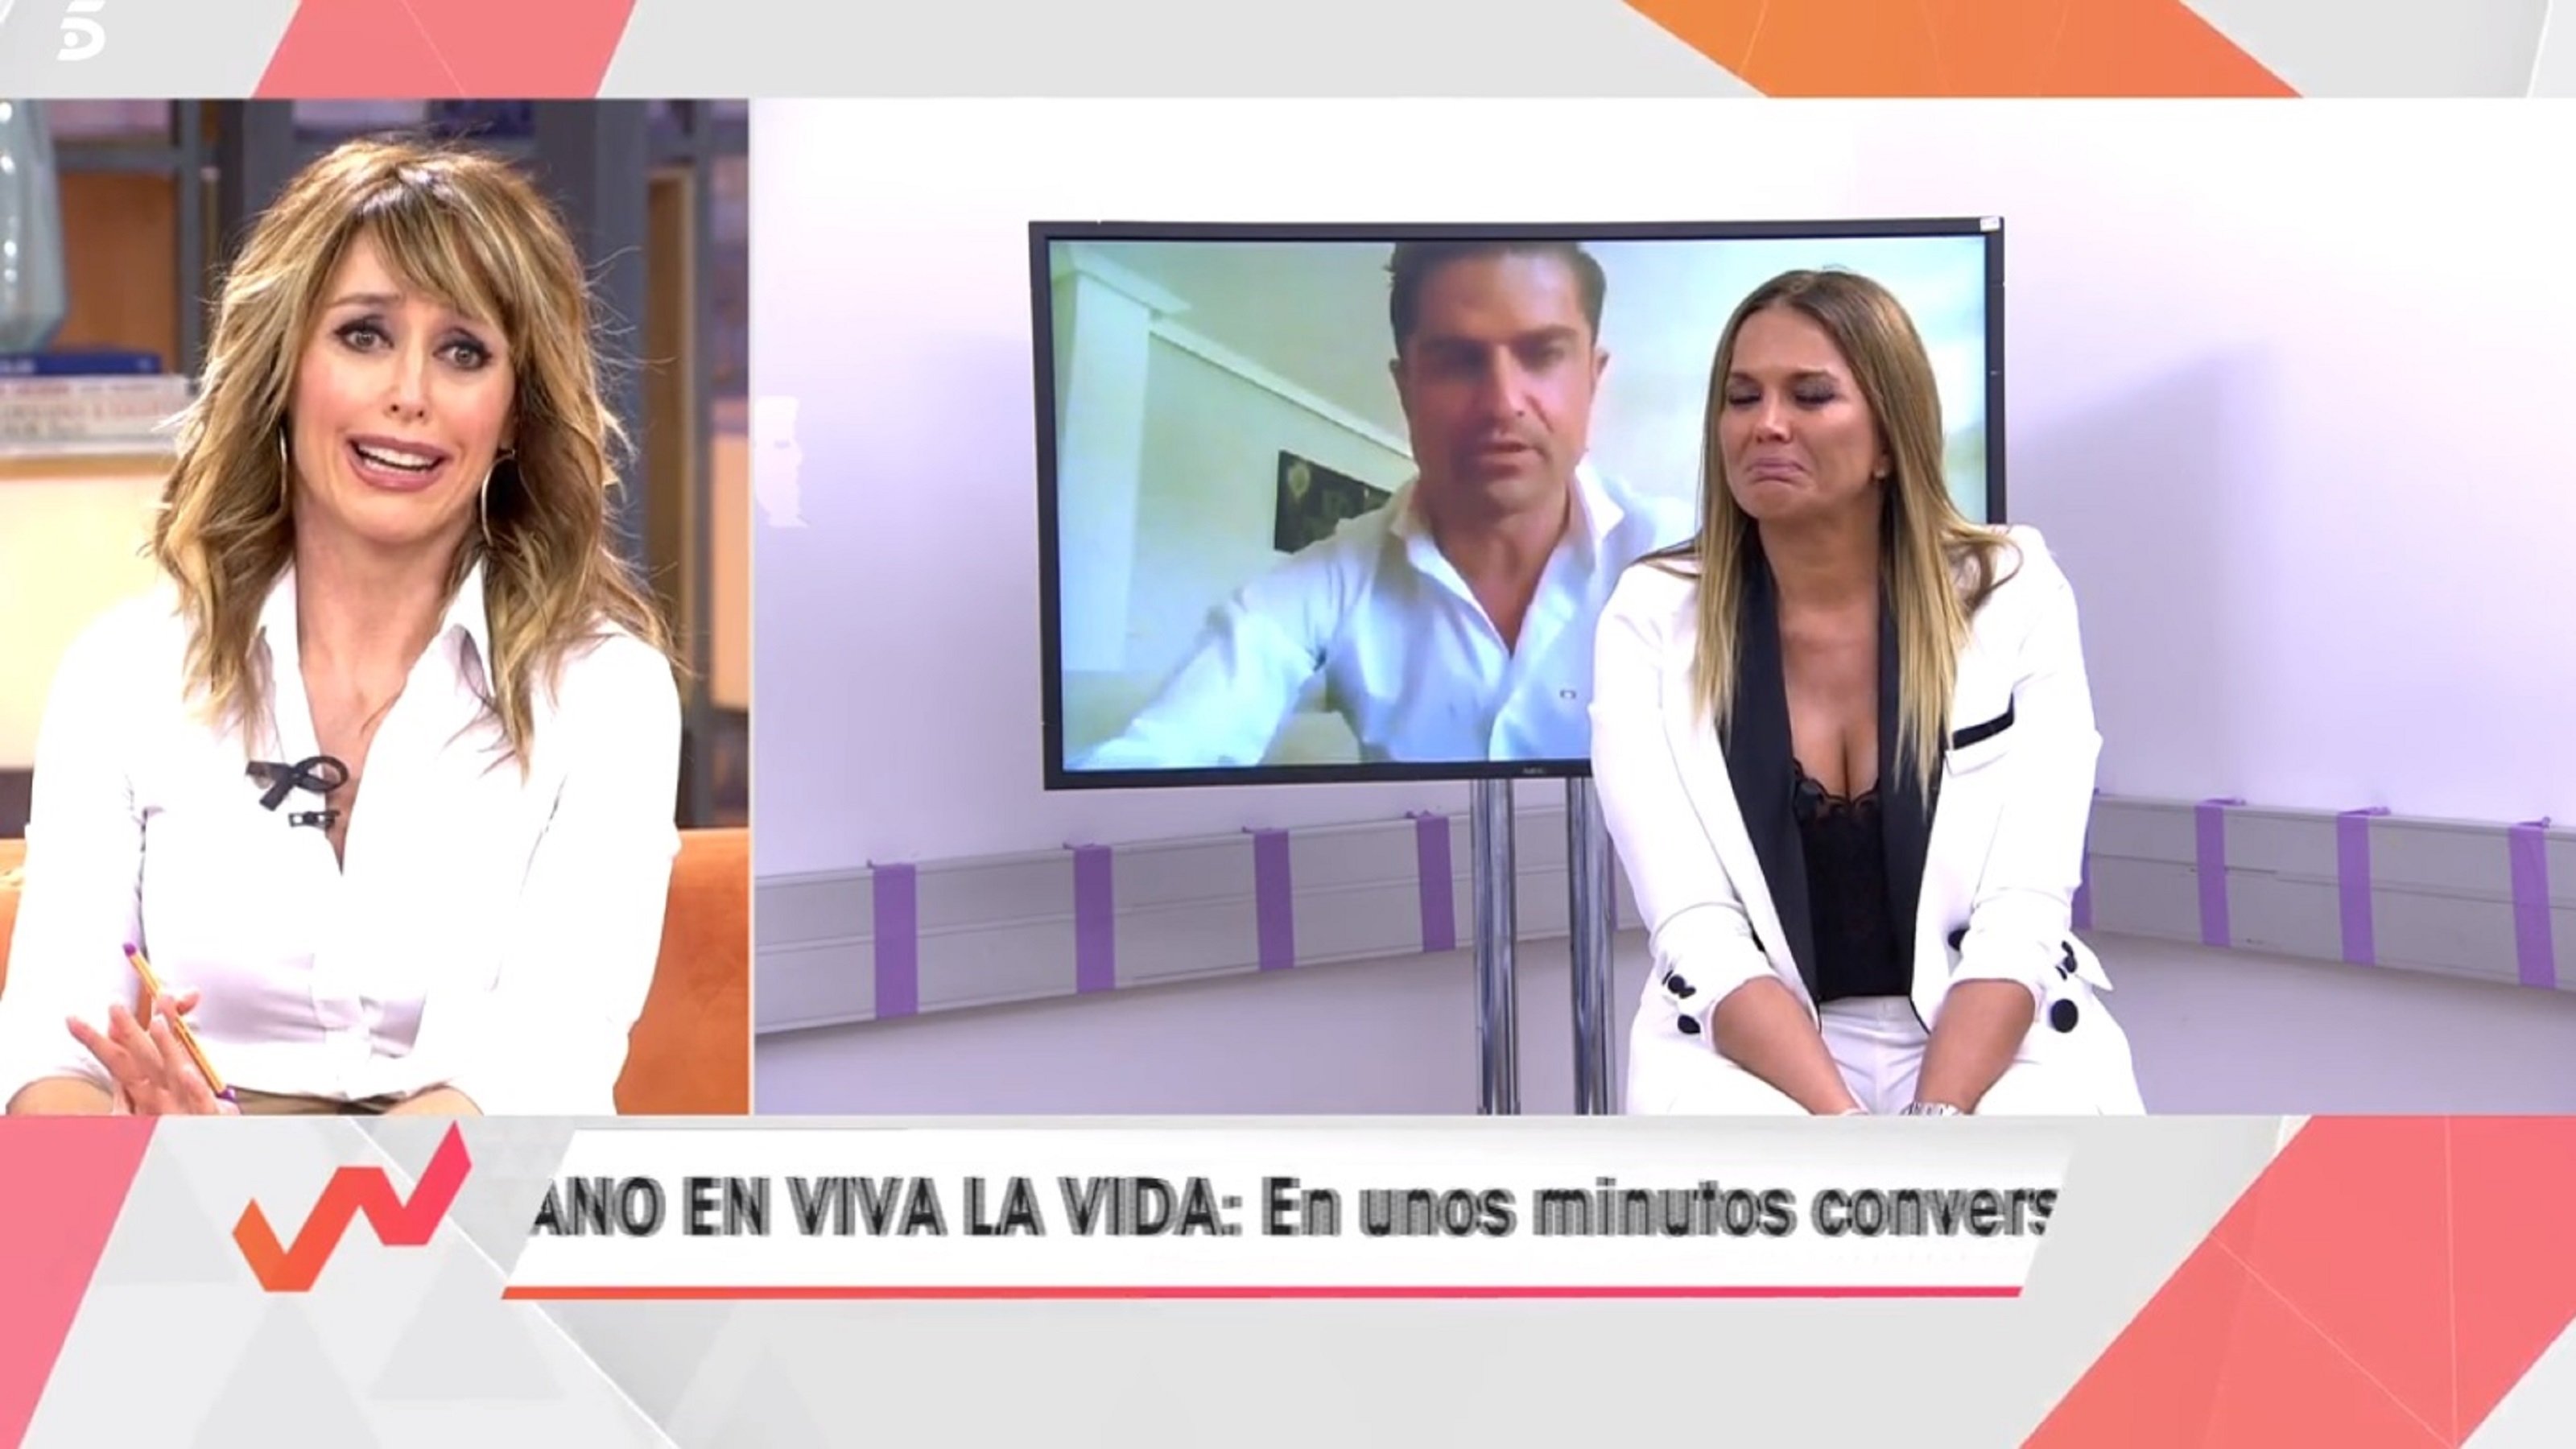 Marta López plora desconsolada pel vídeo de Merlos: "Esto es muy vergonzoso"